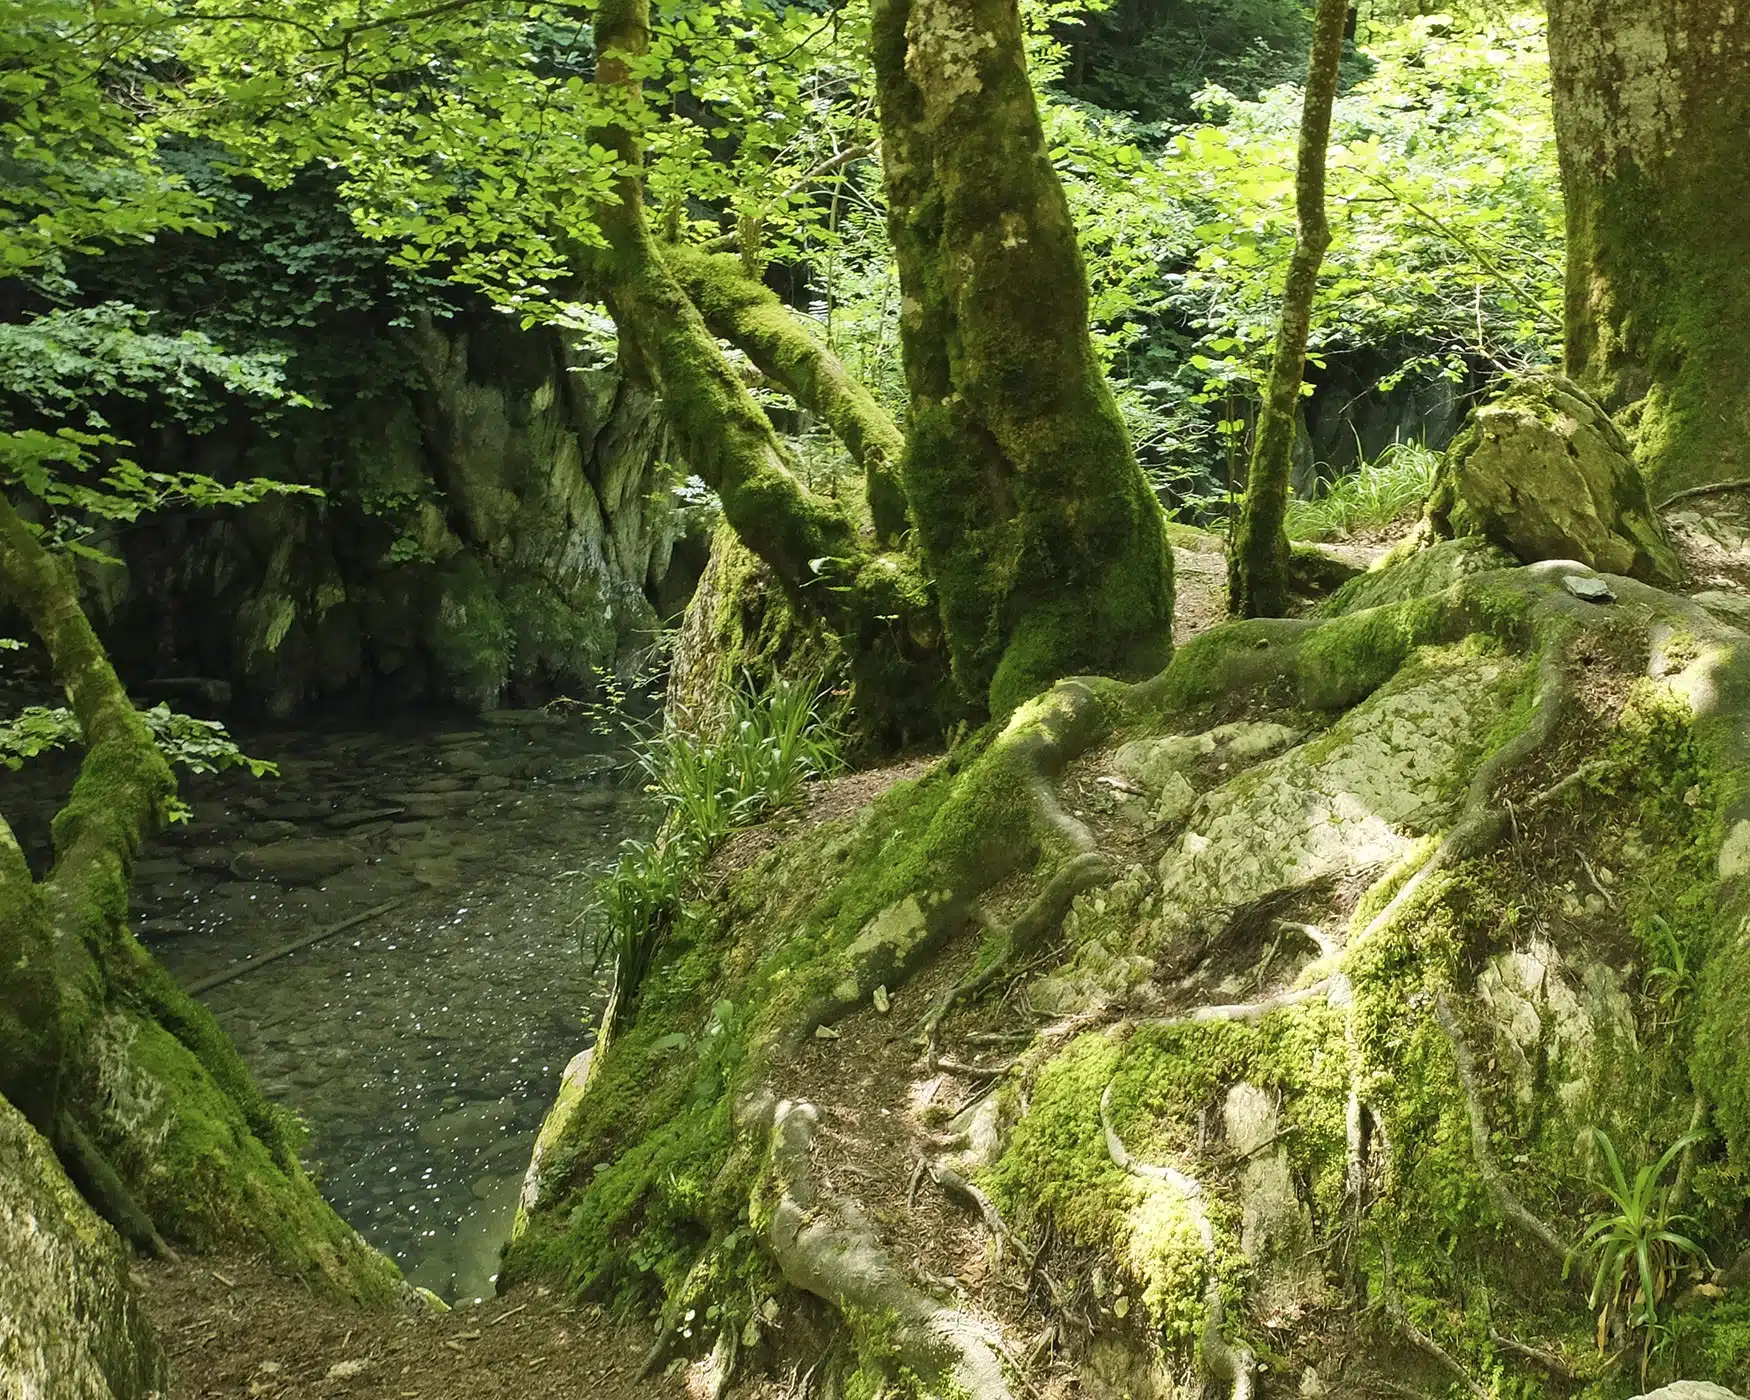 Fotografía en color de la selva de Irati en Navarra. Un bosque lleno de hayas, abetos y otros árboles. Sombra junto al estanque y las piedras cubiertas de musgo bajo la sombra.